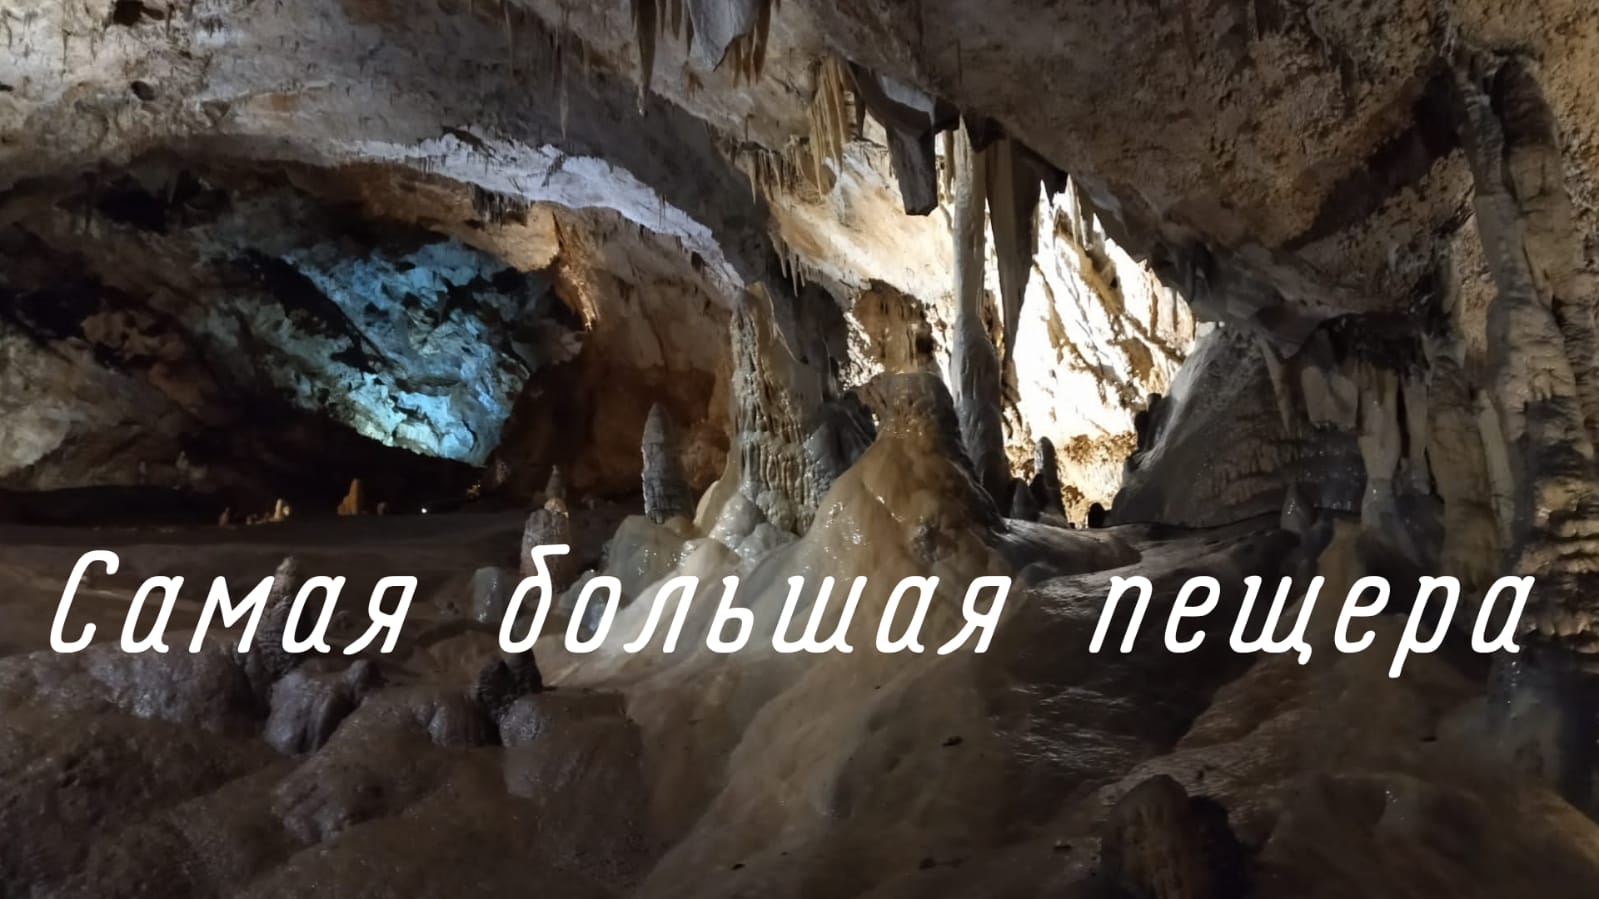 Липская пещера, Черногория 2021. Видео из пещеры.